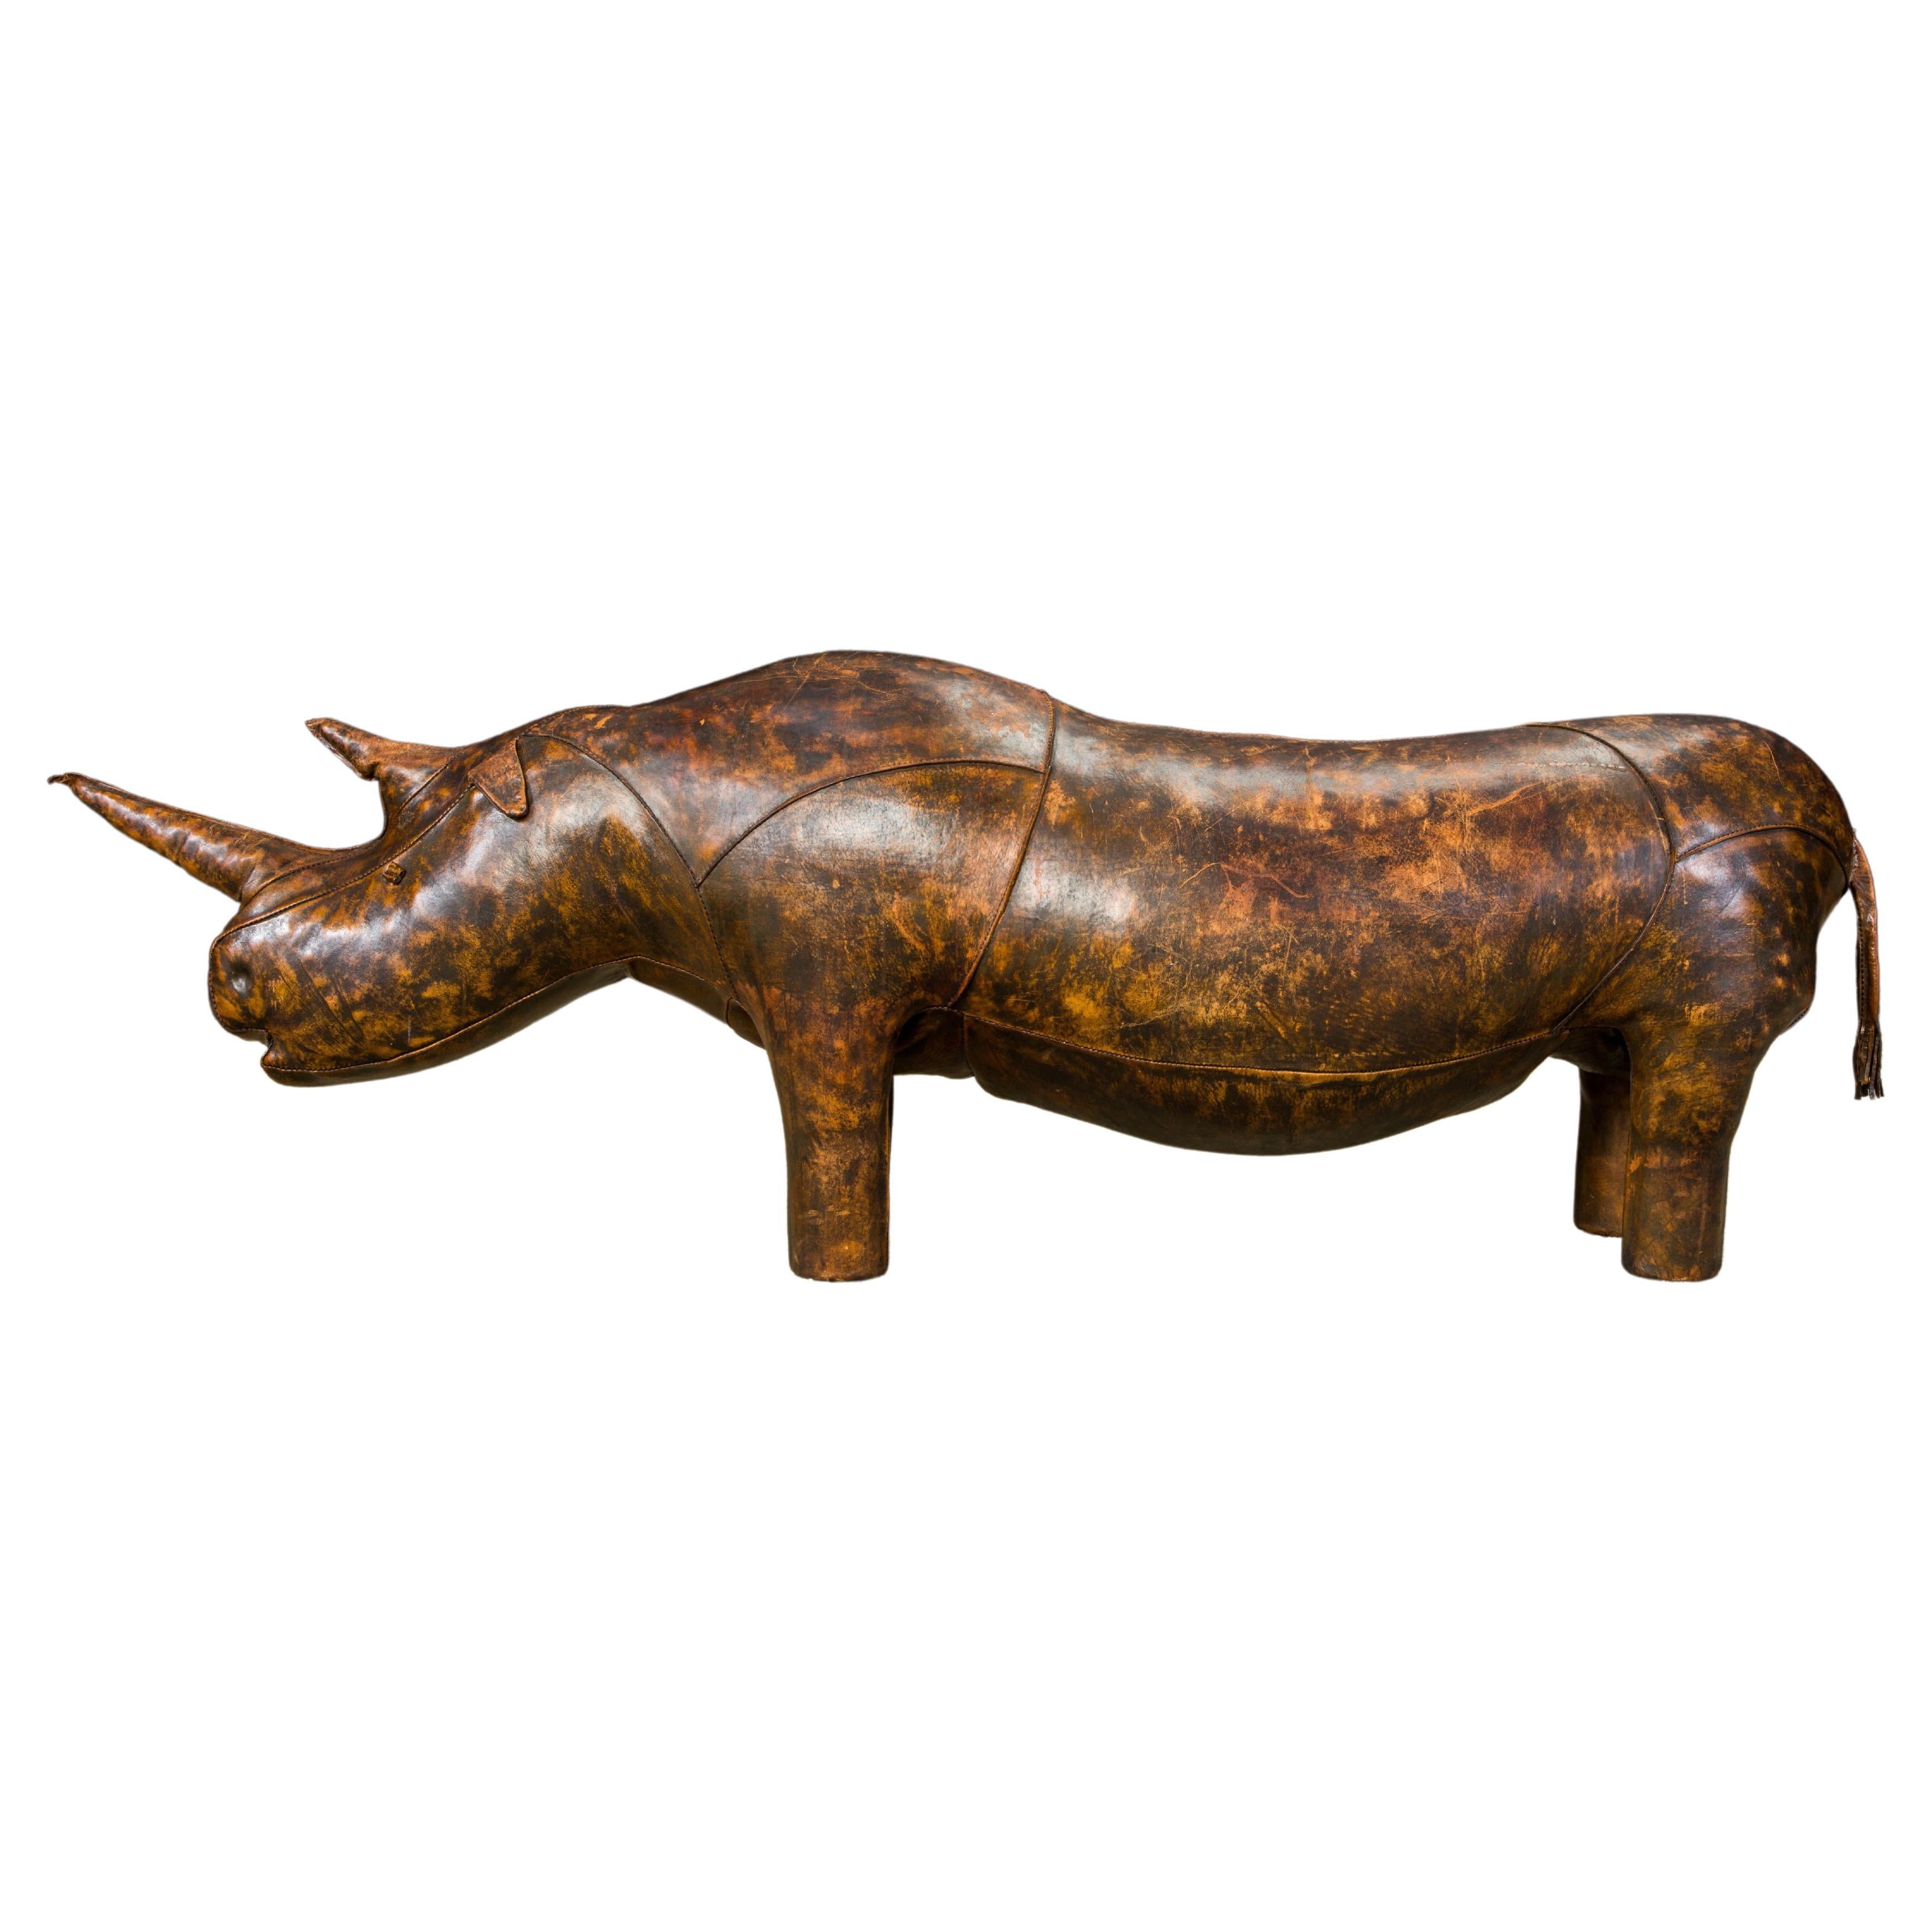 77"" Leder 'Superking' Rhino von Dimitri Omersa für Abercrombie & Fitch, signiert im Angebot